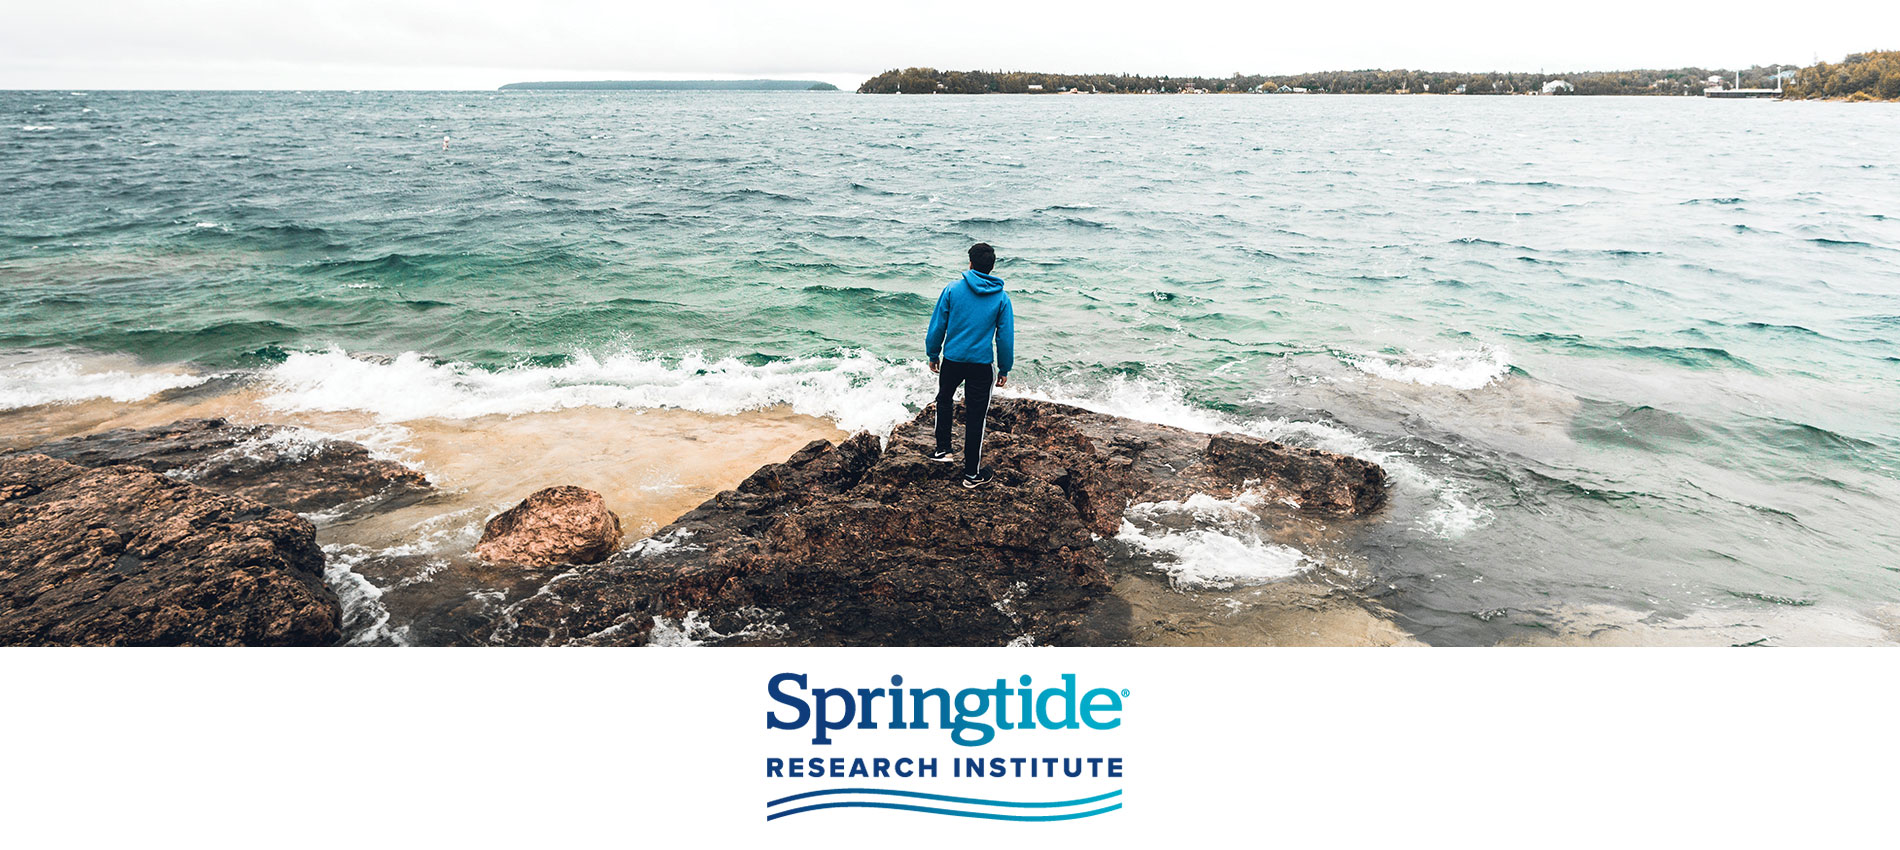 Springtide Research Institute